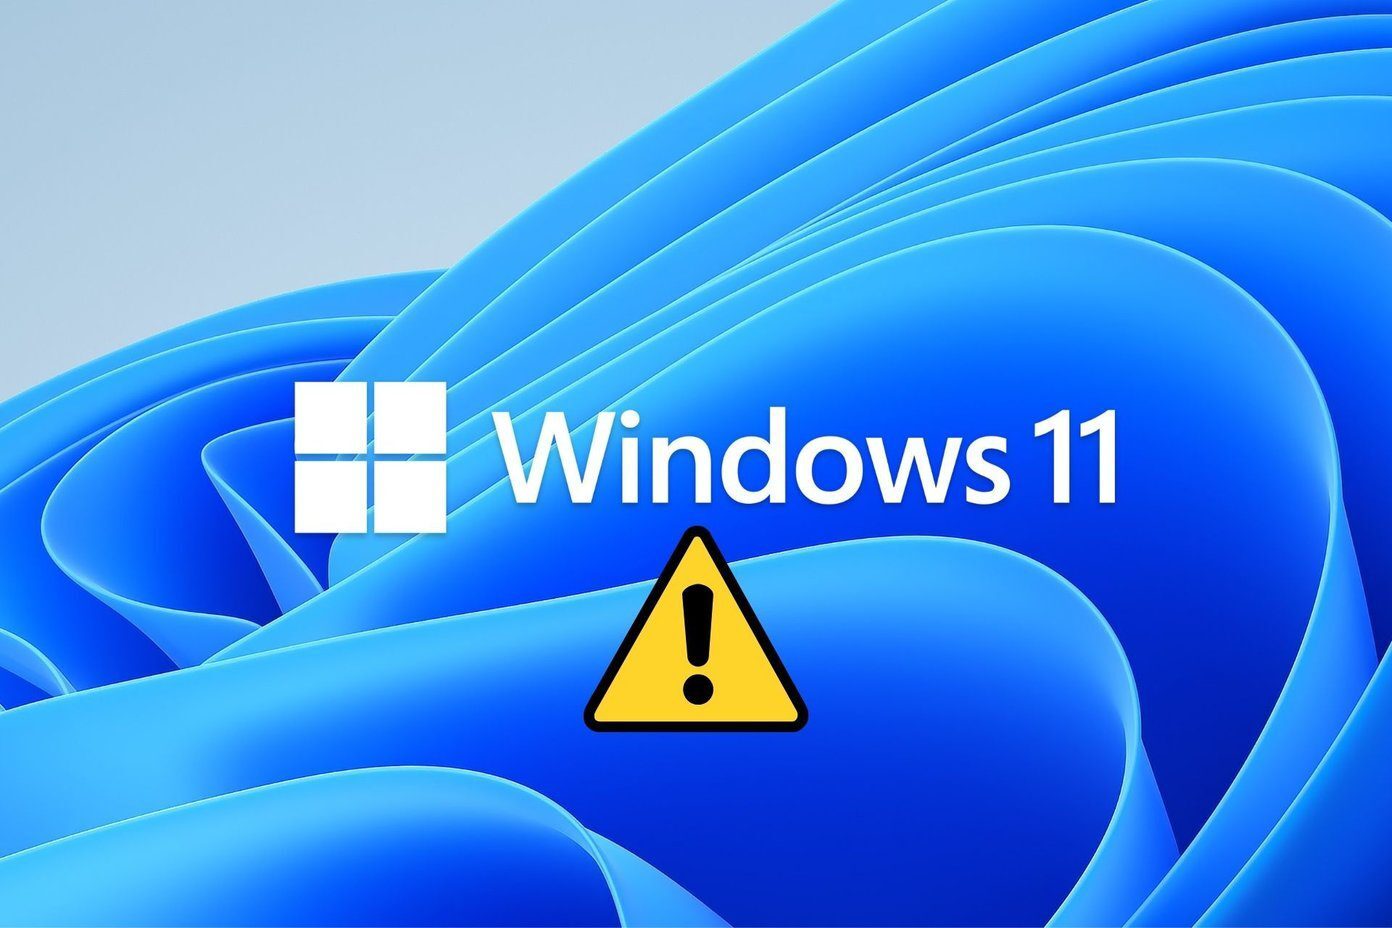   Windows 11  ,         